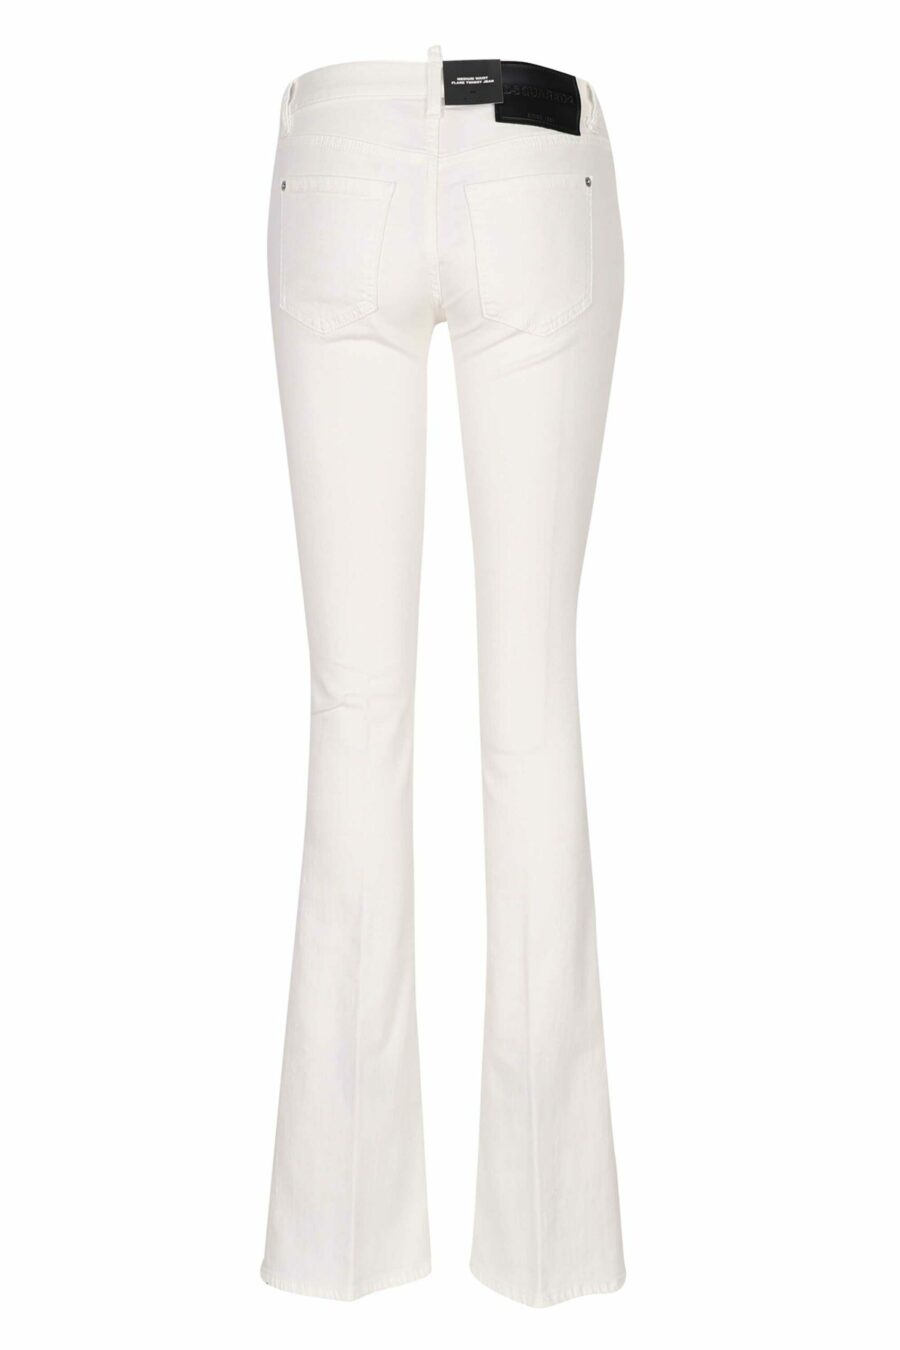 Weiße "twiggy jean" Jeans mit breitem Stiefel - 8054148307912 2 skaliert